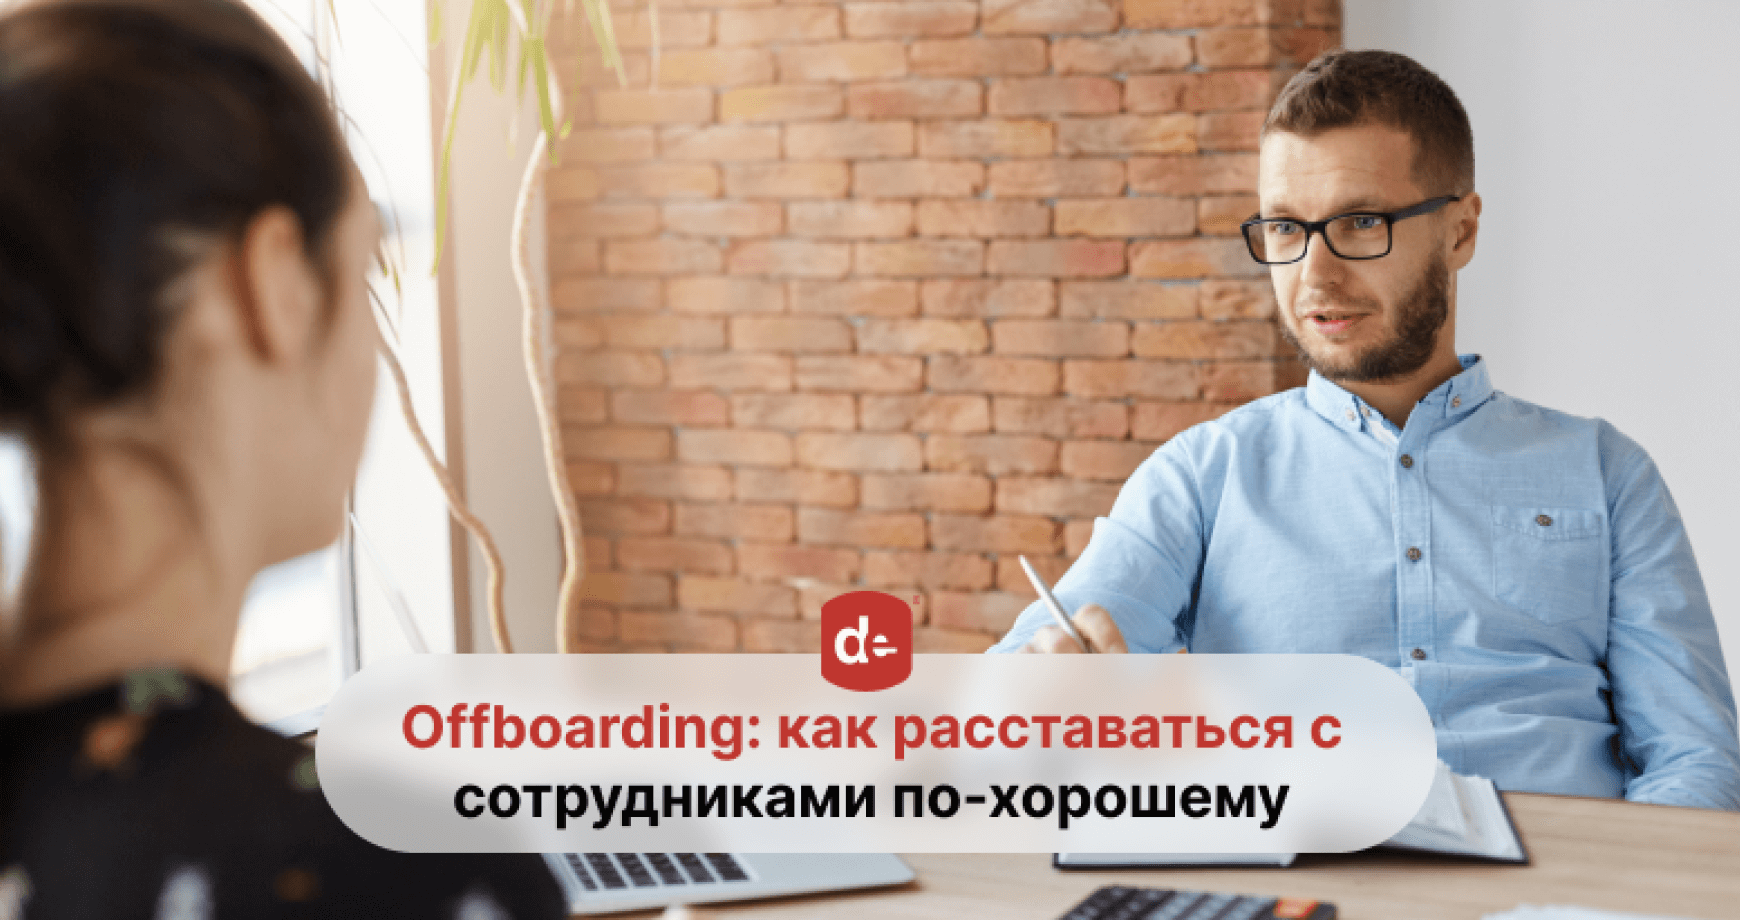 Offboarding персонала: безболезненное увольнение сотрудников